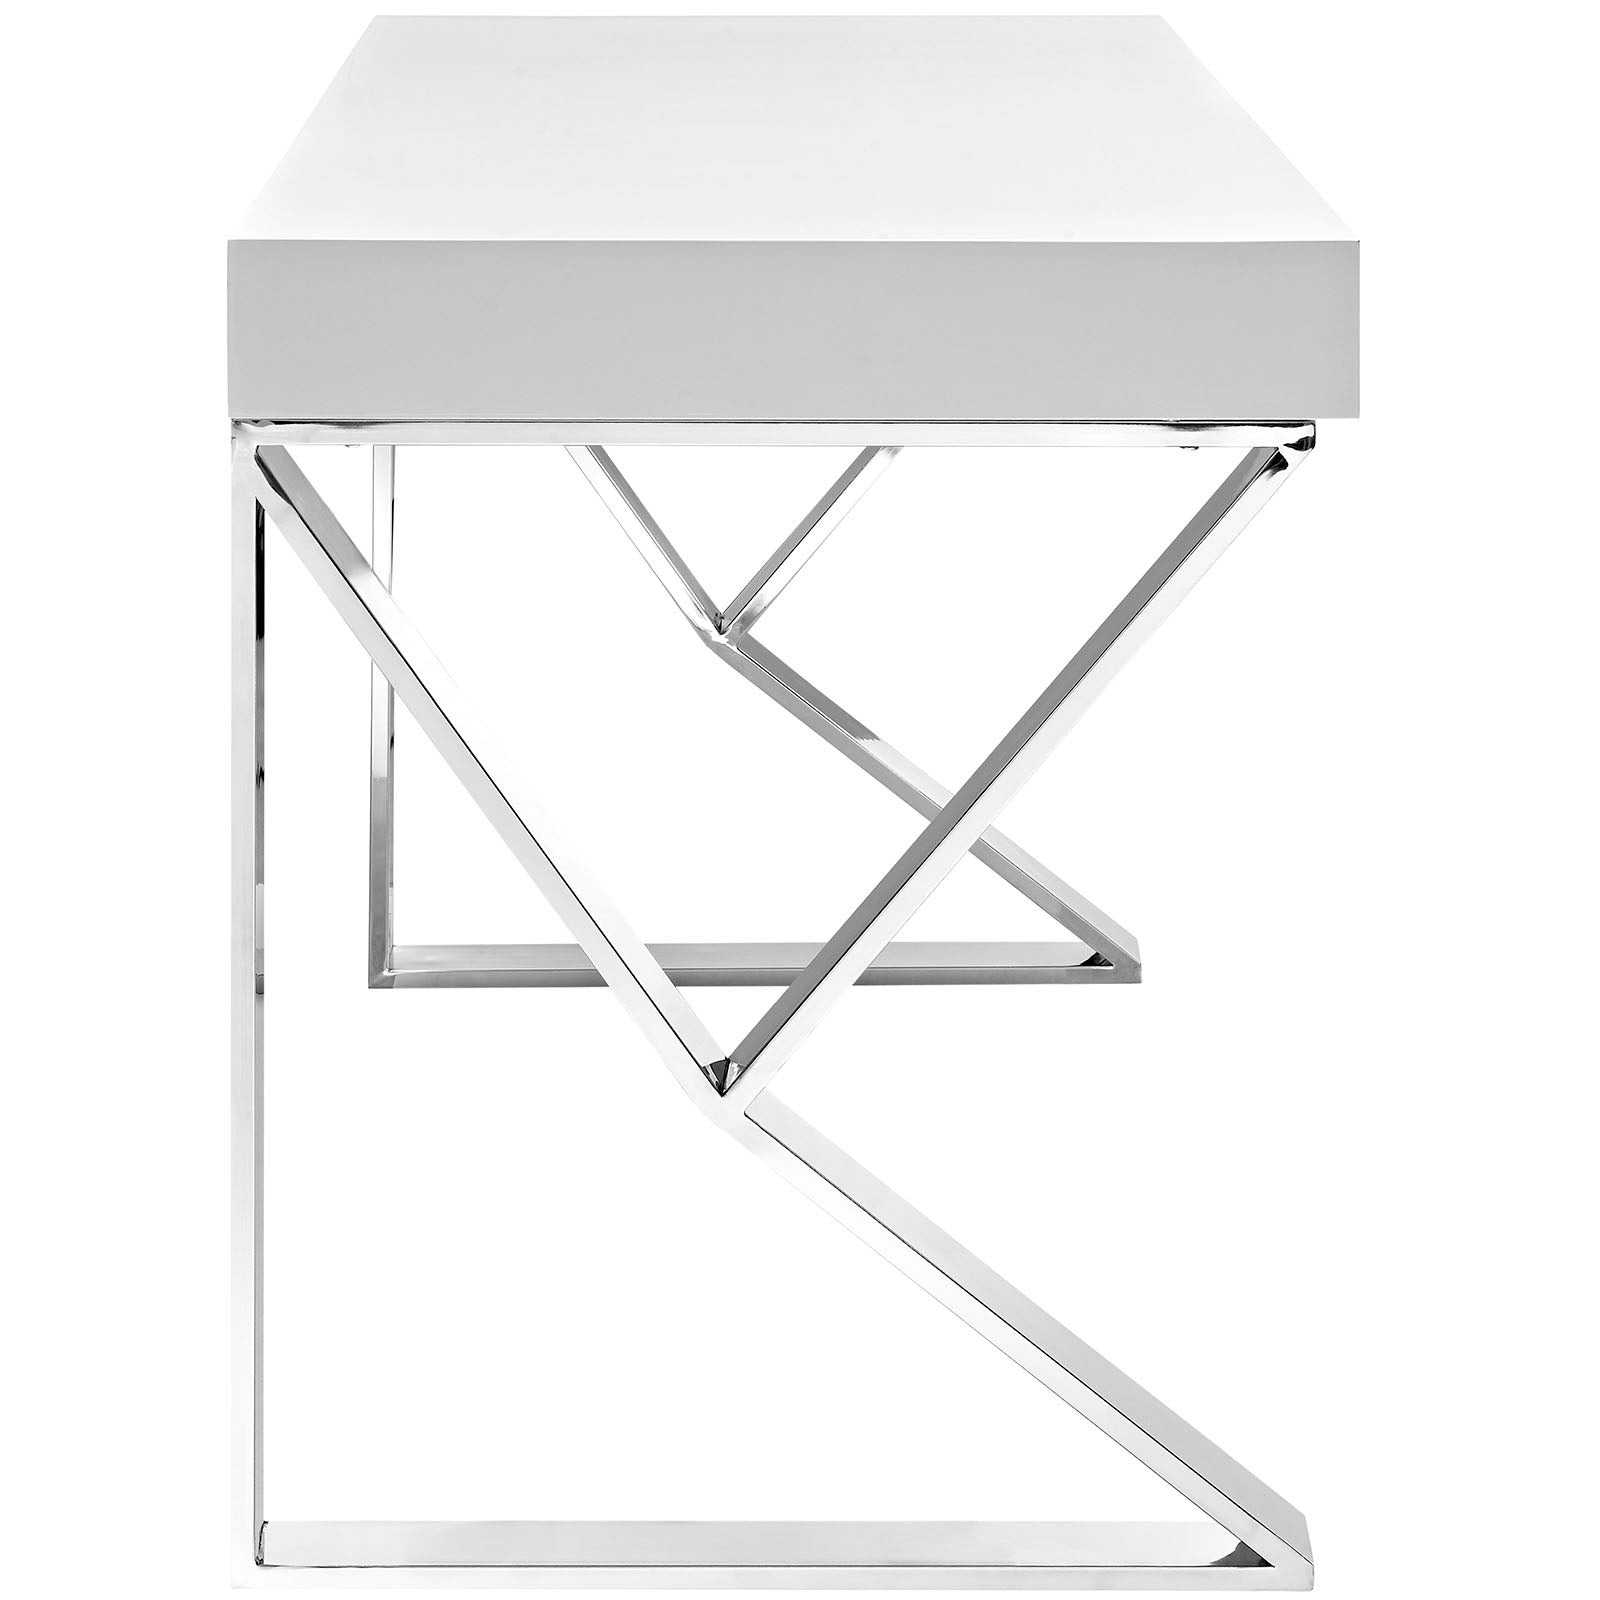 Modway Desks - Adjacent Desk White